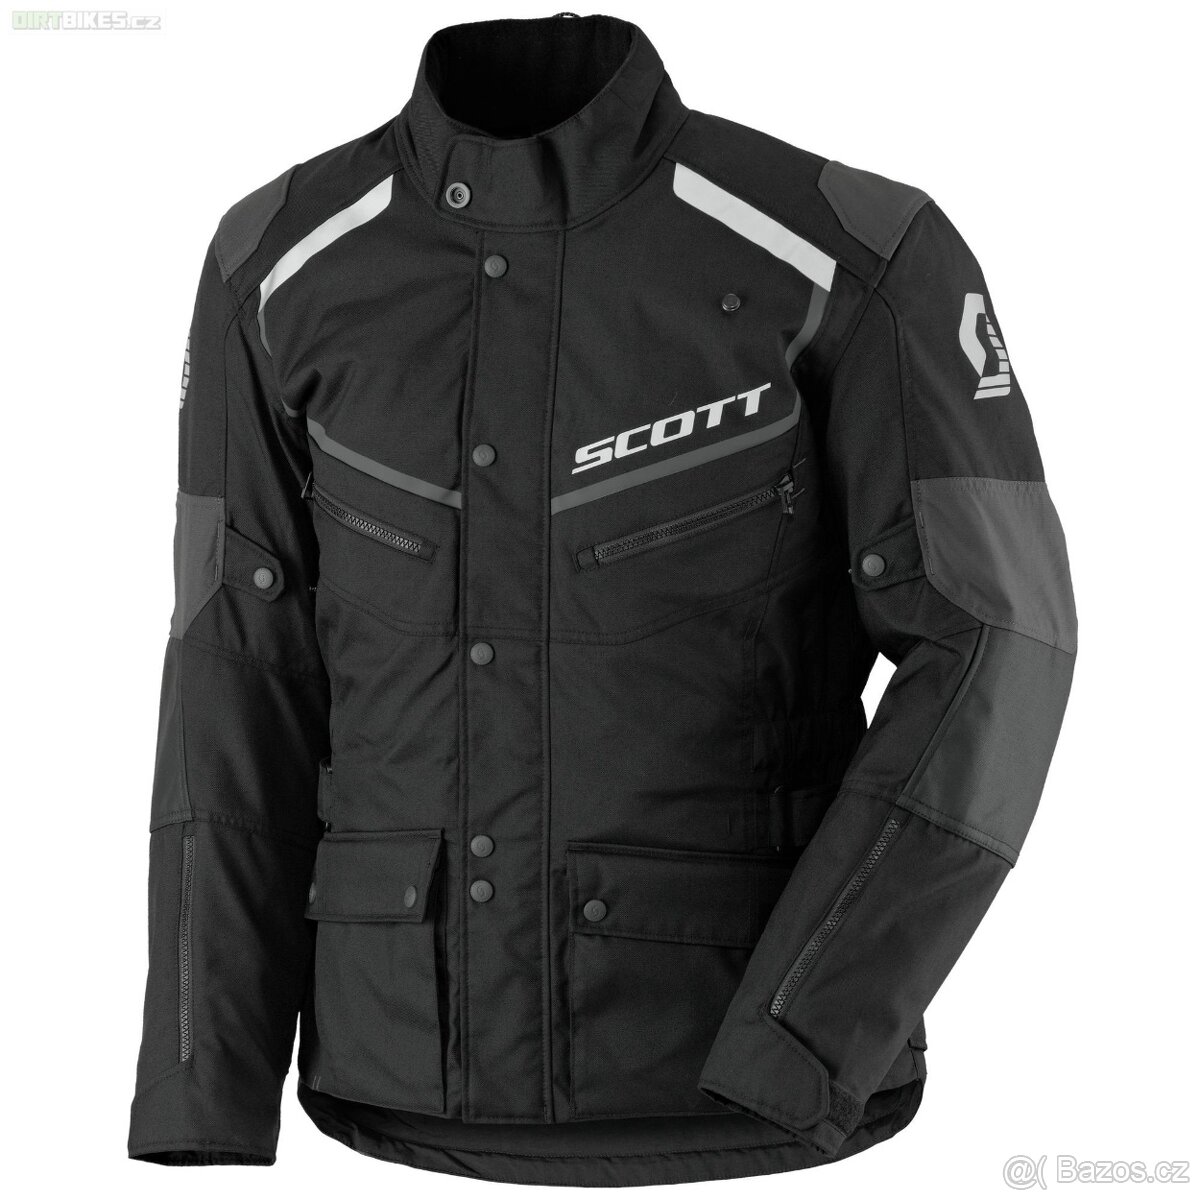 Textilní bunda Scott Turn TP black/grey vel. XL